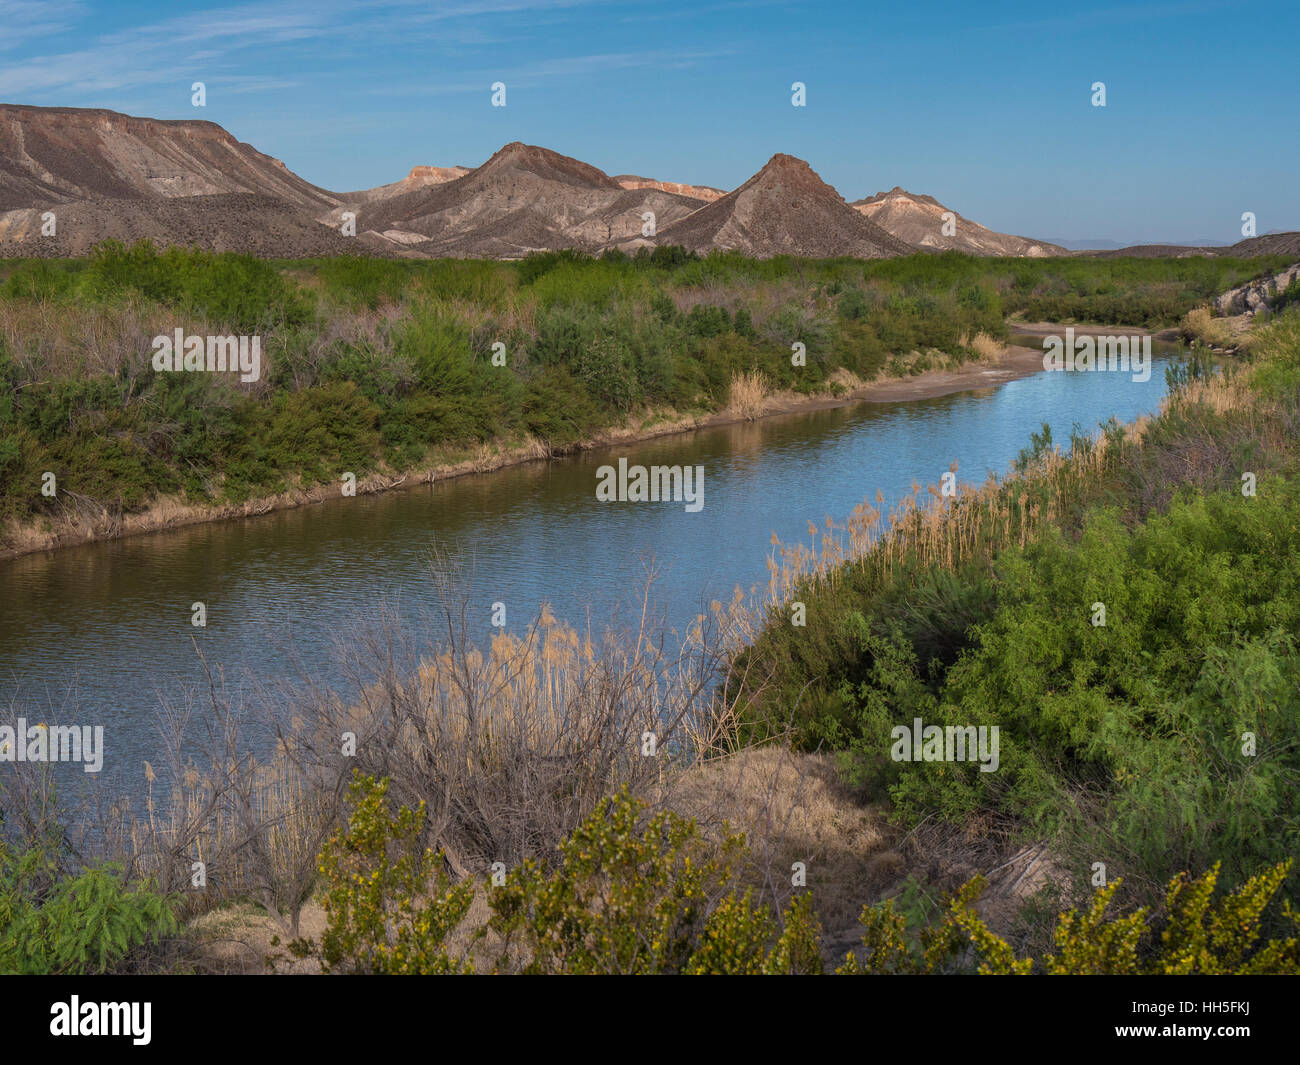 Rio Grande River along Texas Highway 170, Big Bend Ranch State Park, Texas. Stock Photo